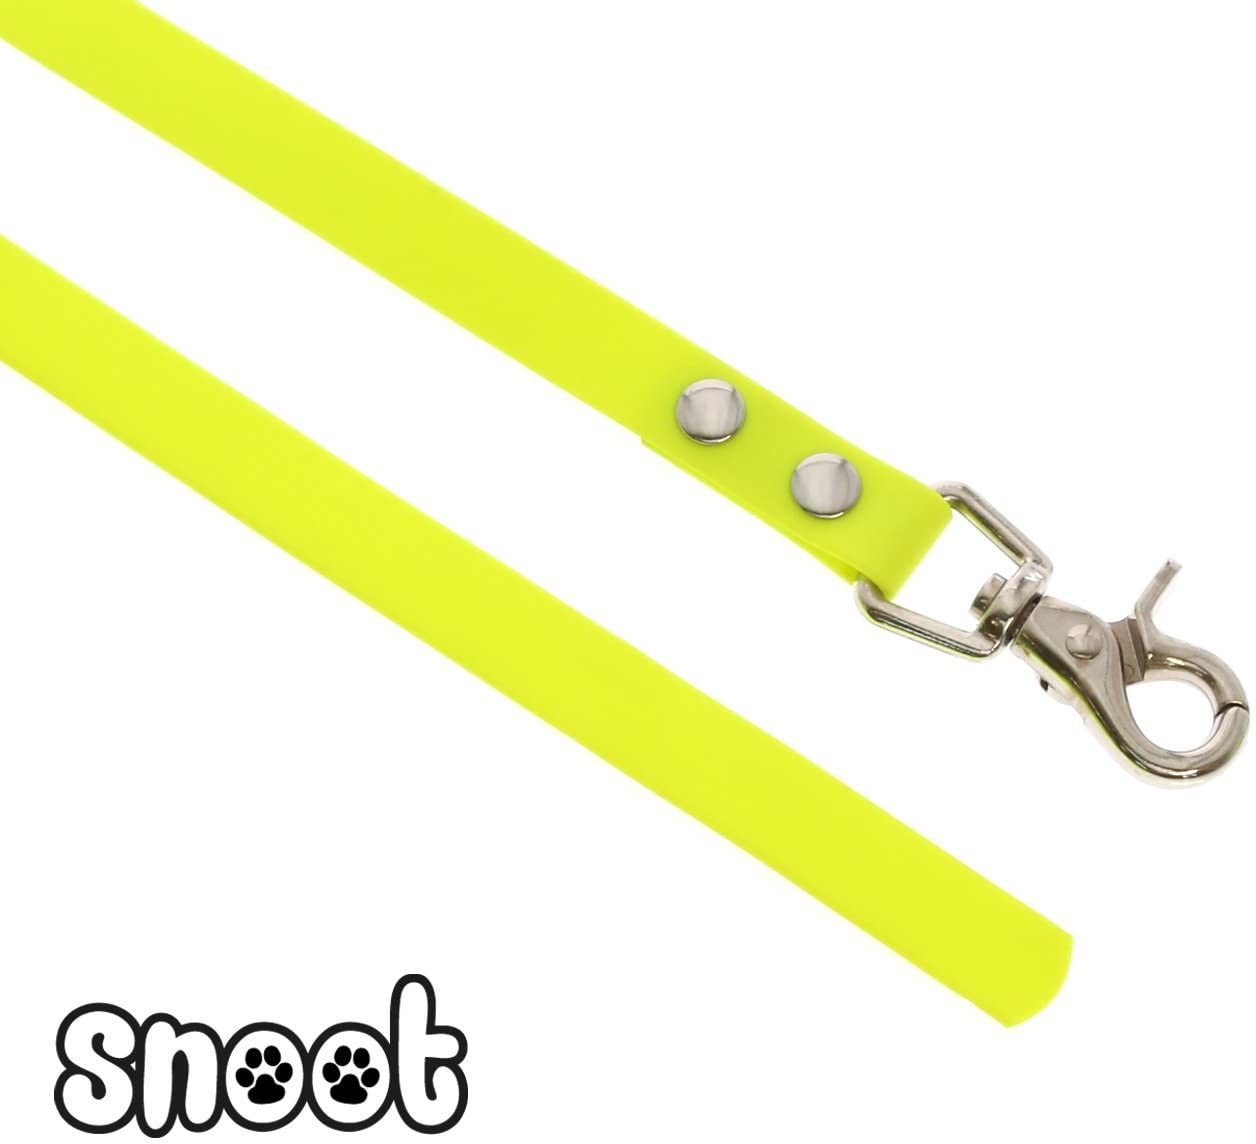  SNOOT Arrastre Cuerda 5 o 10 m de Largo Collar – Resistente, Impermeable y Suciedad 